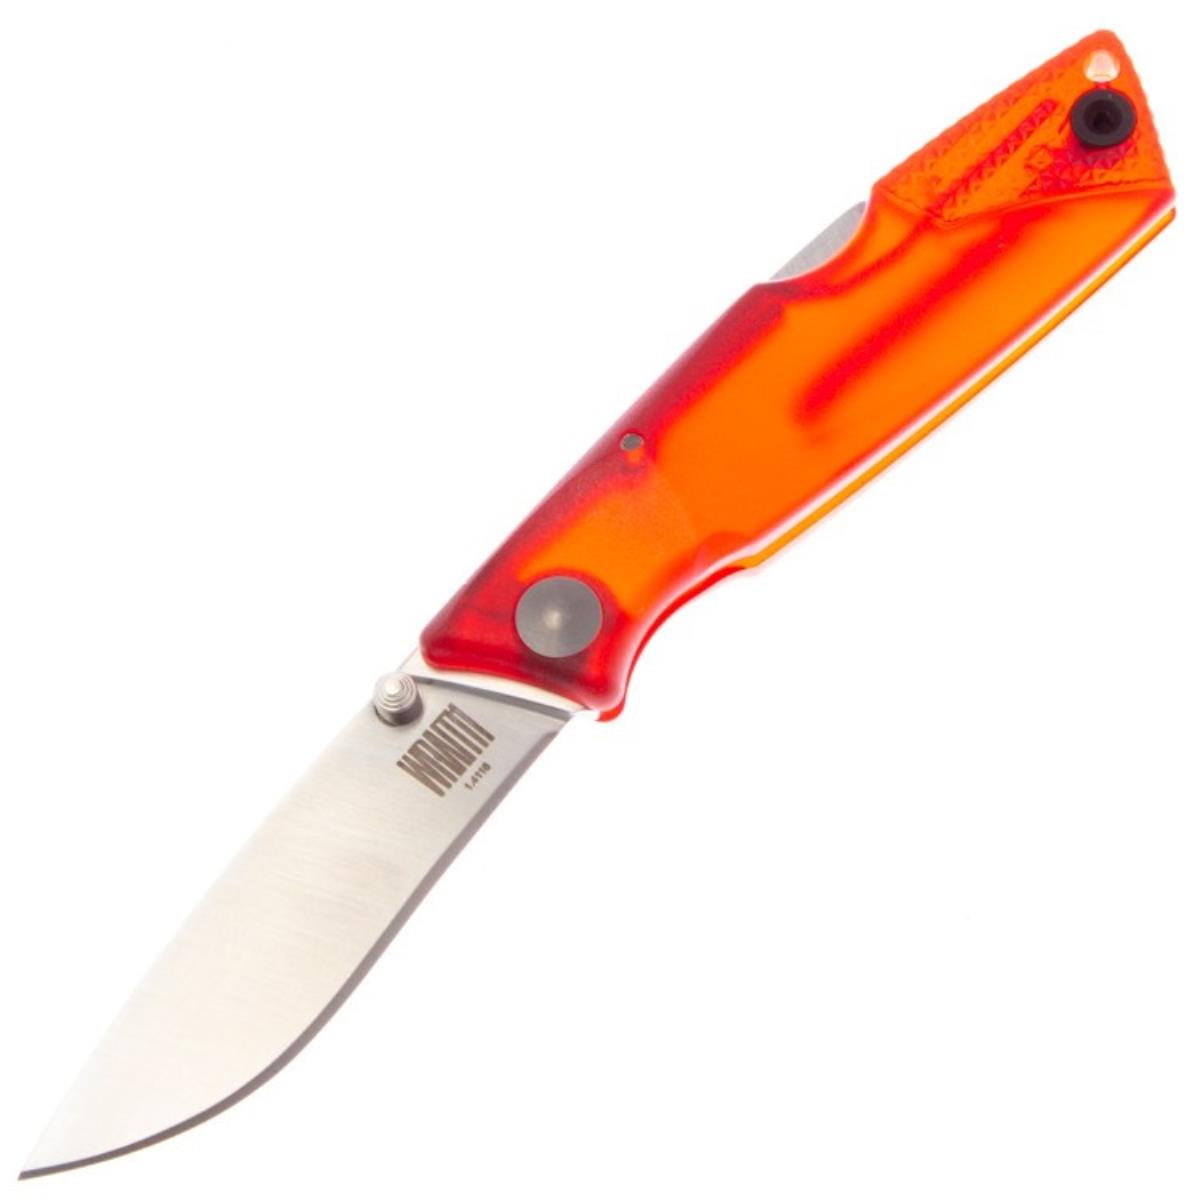 Нож Wraith Ice Series Fire складн.,красная полимерная рукоять, клинок AUS8 (8798RED)  ONTARIO нож складной ontario rat 1 сталь d2 клинок satin рукоять orange grn